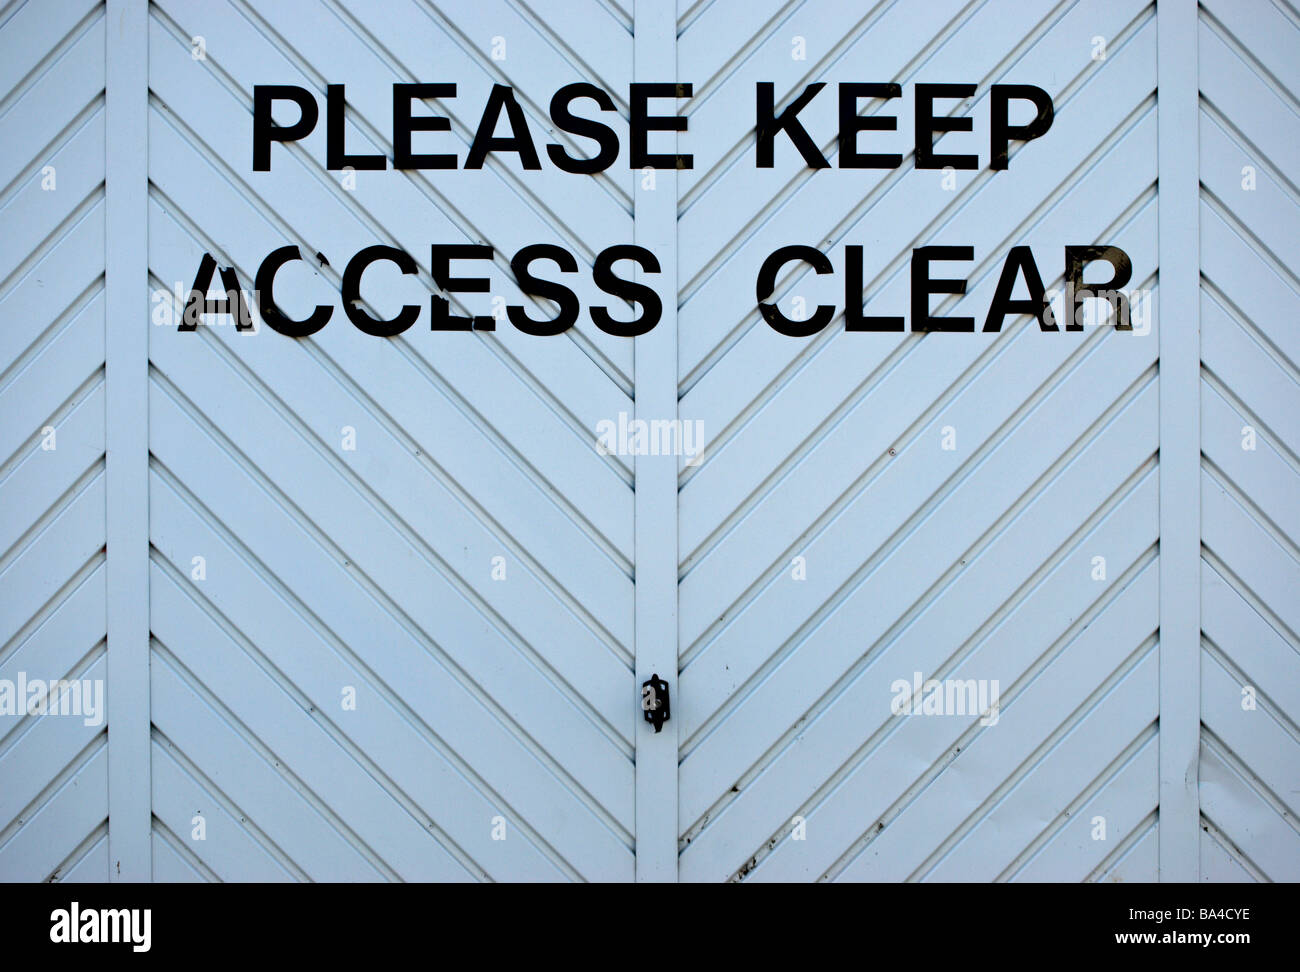 Bitte halten Sie Zugang klar geschrieben auf einem Zickzack-Muster-Garagentor Stockfoto